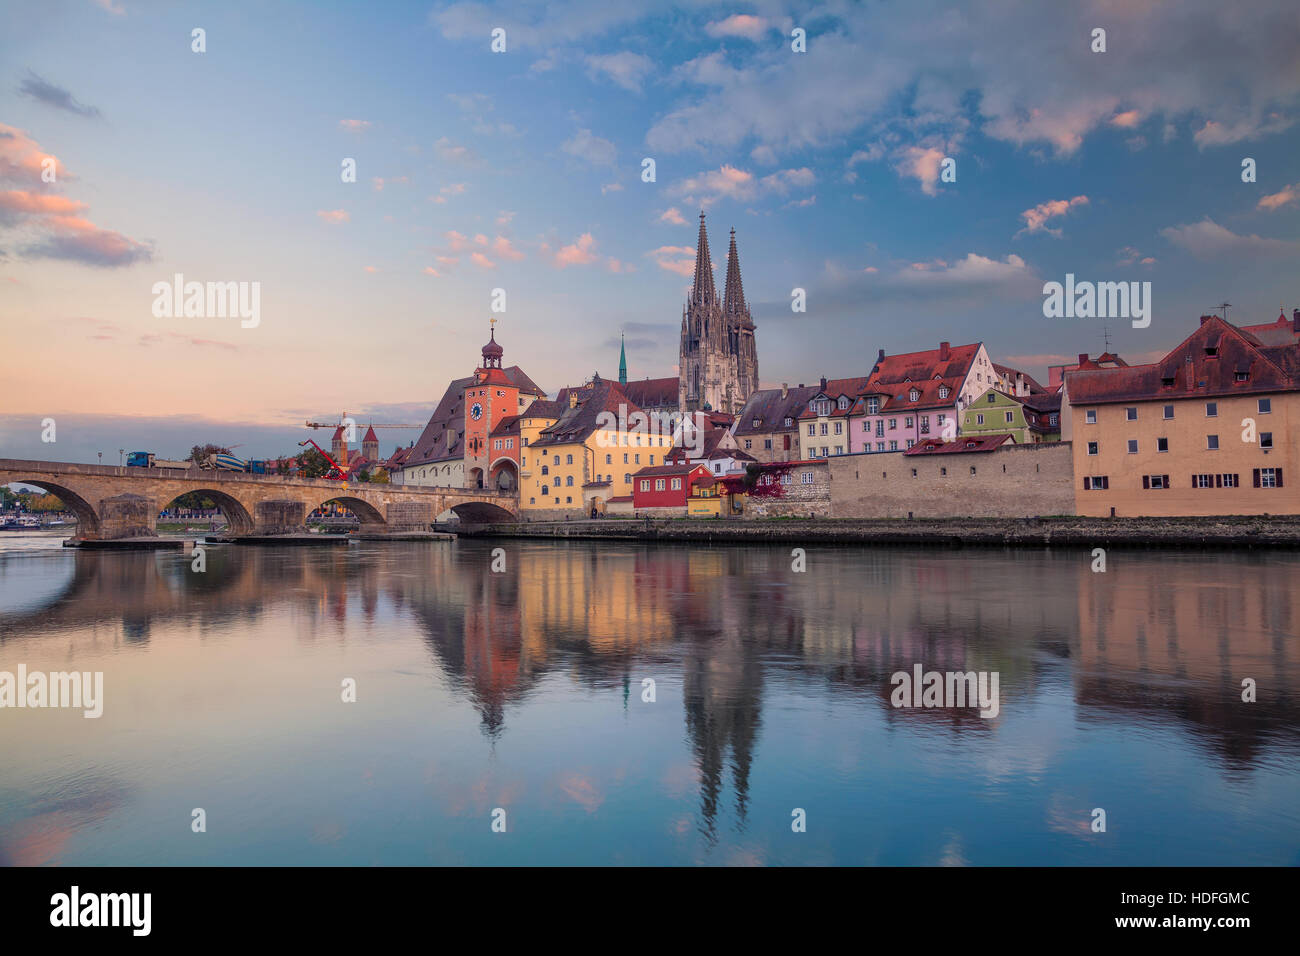 Regensburg. Imagen del paisaje urbano de Regensburg, Alemania durante la puesta de sol. Foto de stock